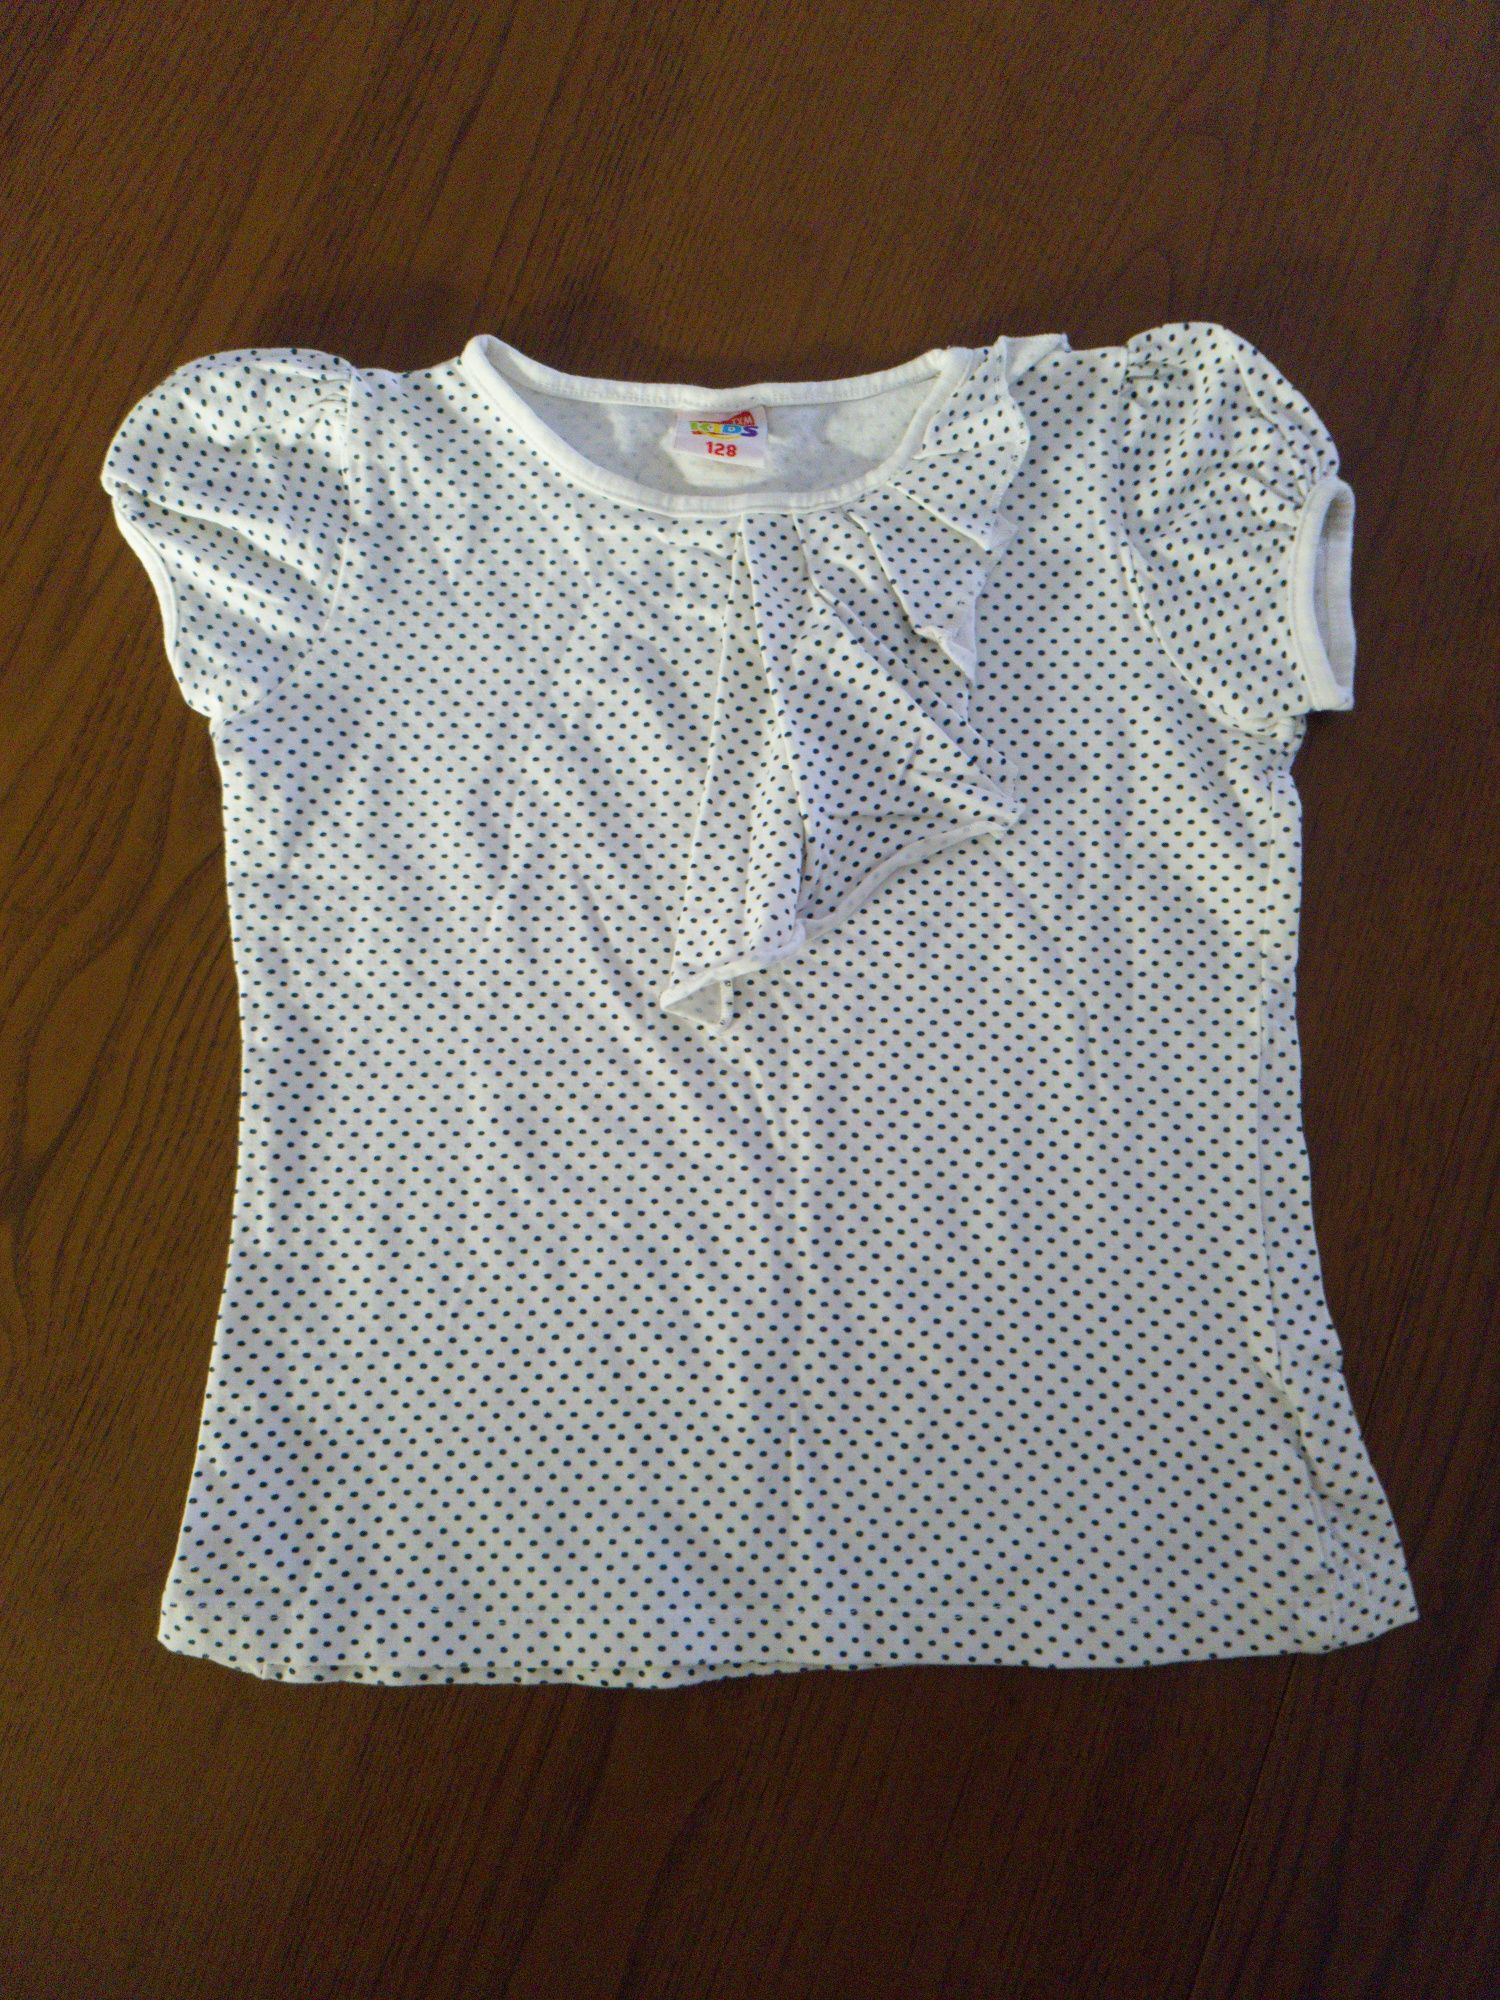 Txm kids bluzeczka 128 koszulka groszki w kropki dla dziewczynki